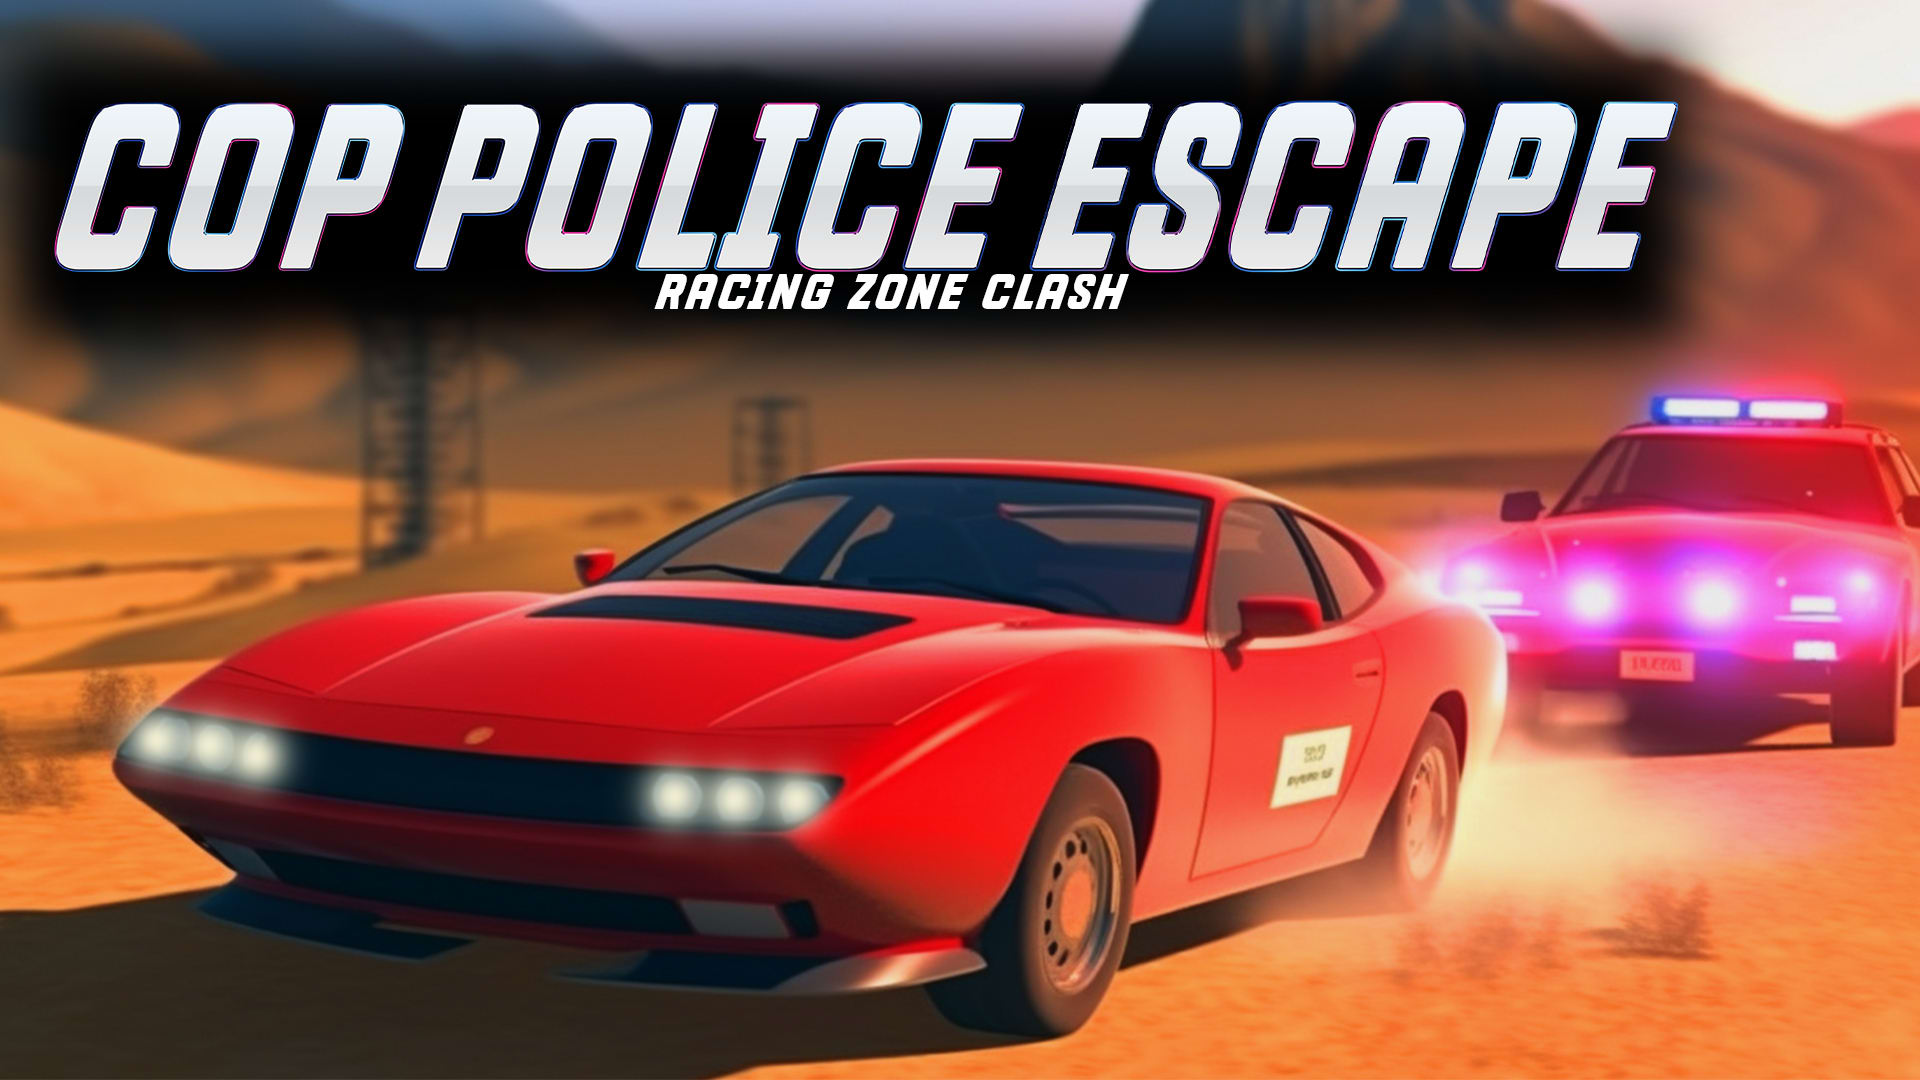 Cop Police Escape Racing Zone Clash 1